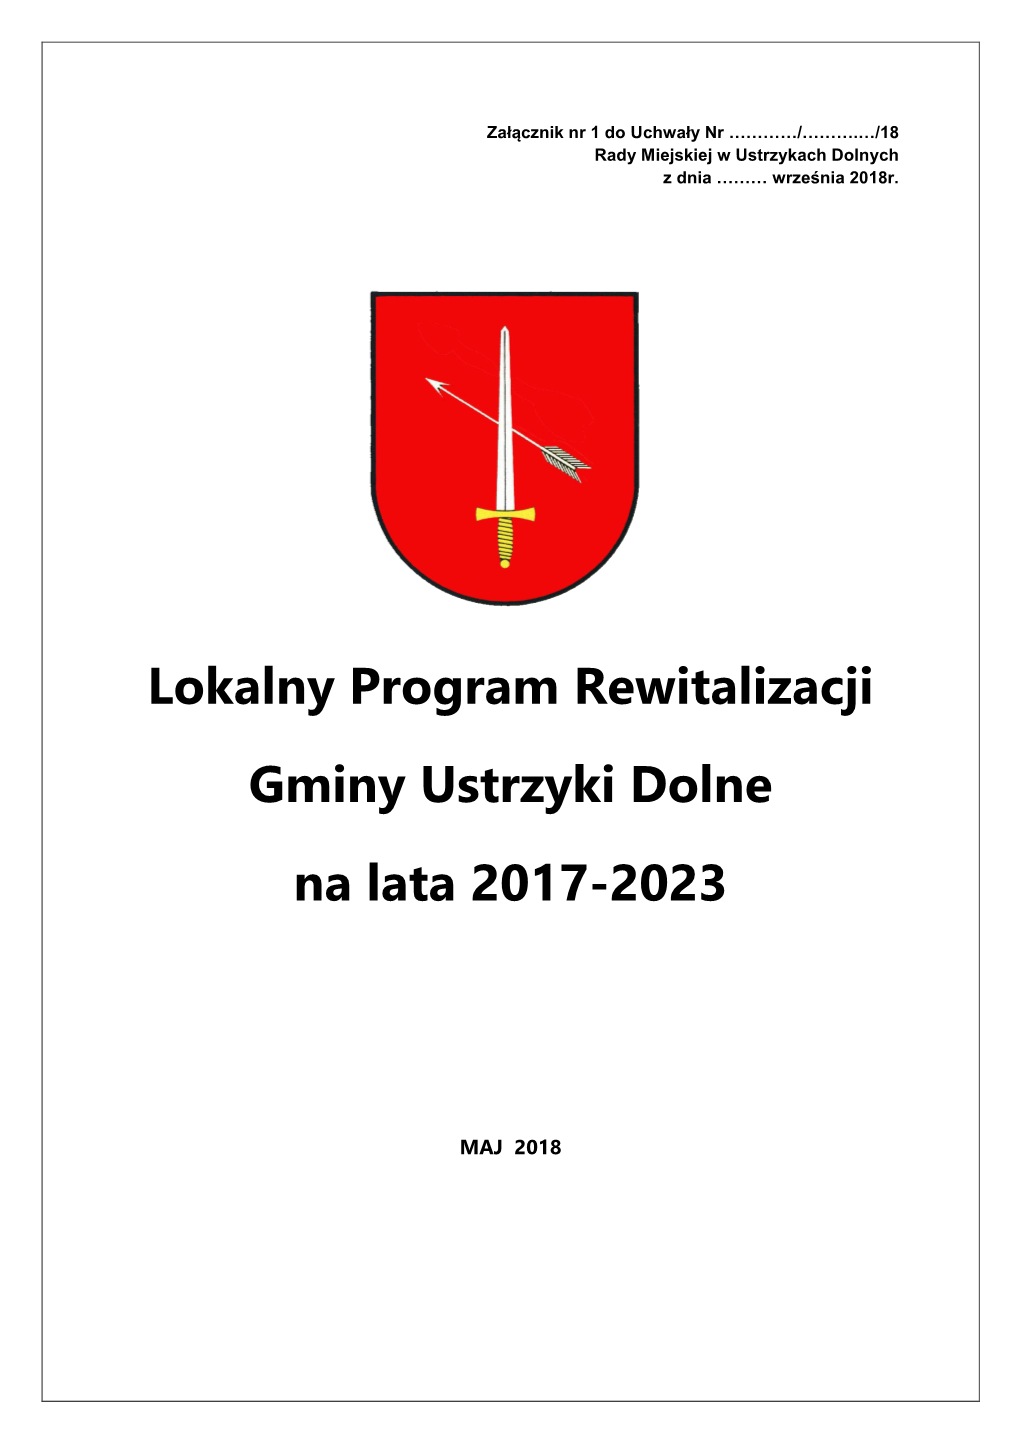 Lokalny Program Rewitalizacji Gminy Ustrzyki Dolne Na Lata 2017-2023 Jest Opracowanym I Uchwalonym Przez Radę Miejską W Ustrzykach Dolnych, Na Podstawie Art